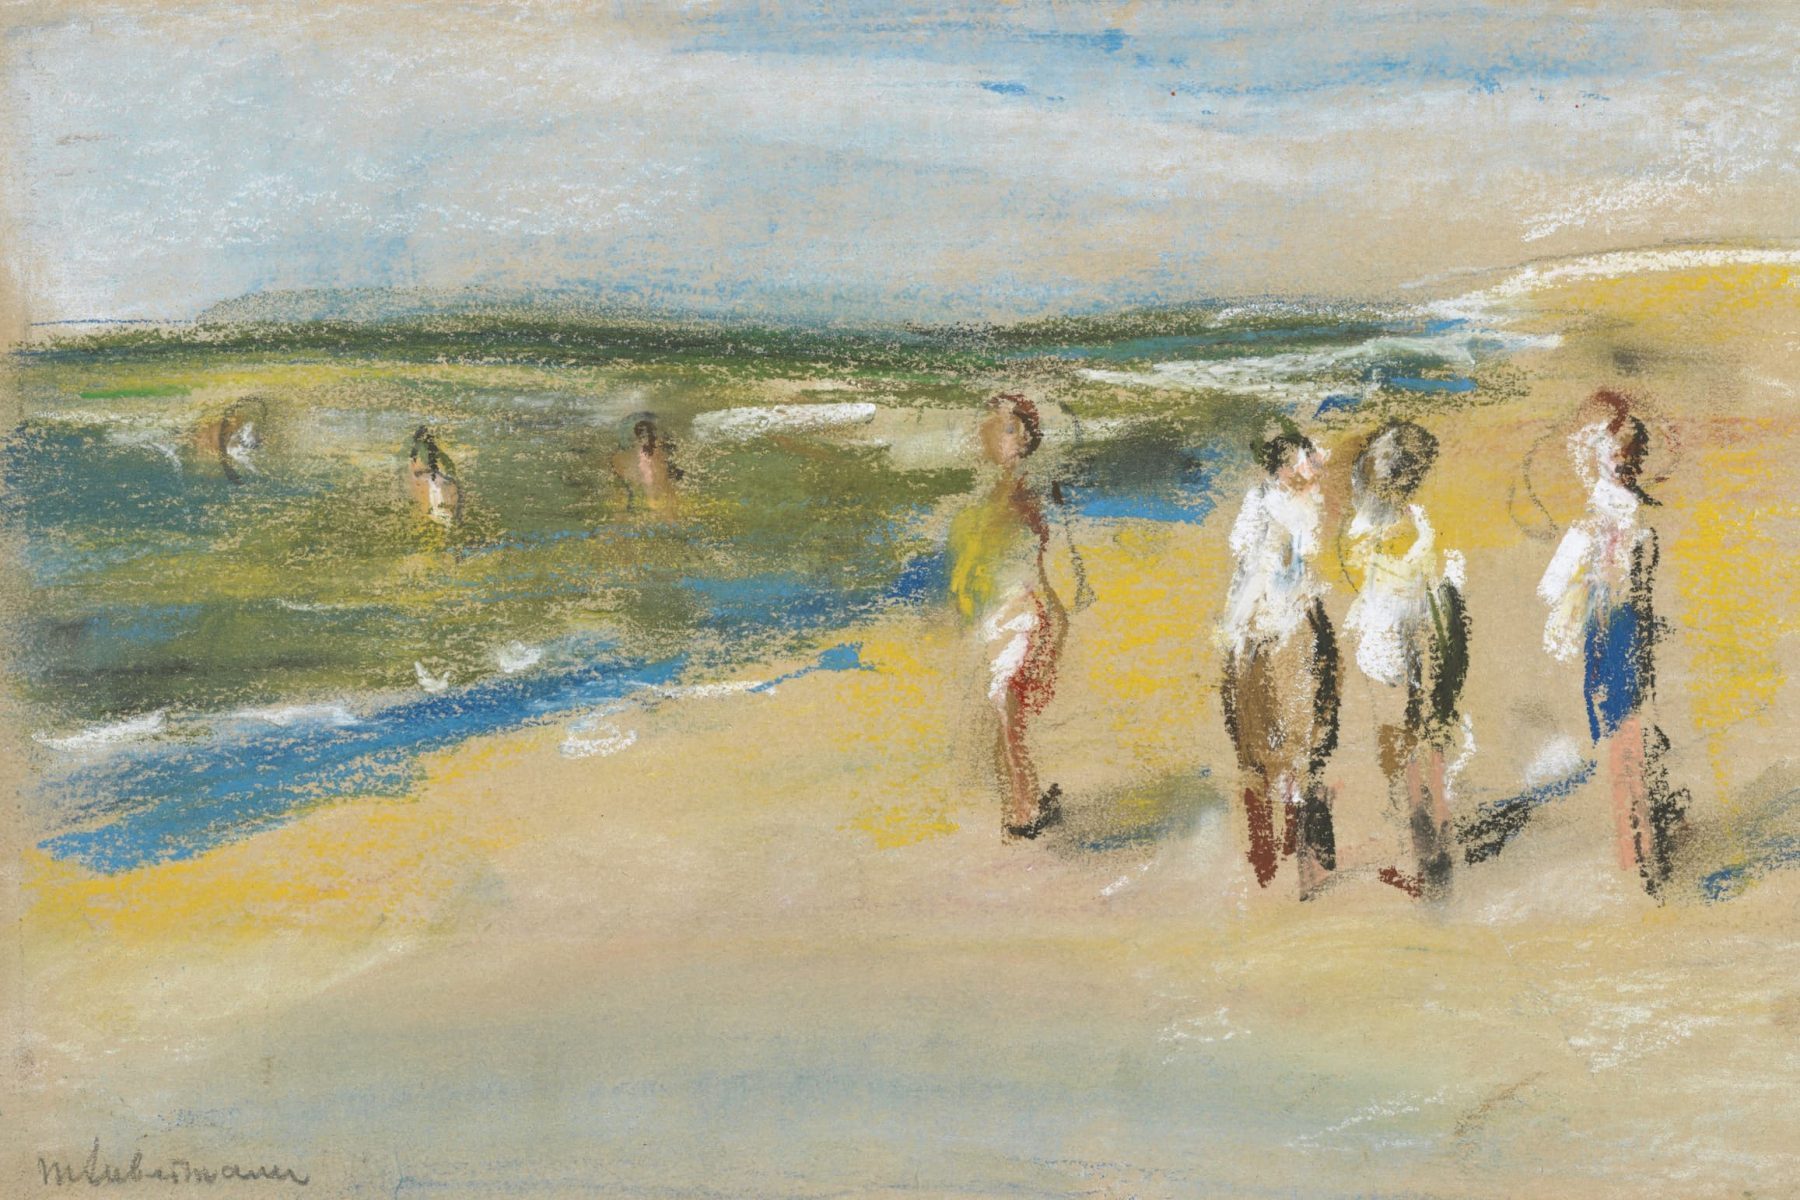 Pastellzeichnung von mehreren Figuren am Strand und im Meer.